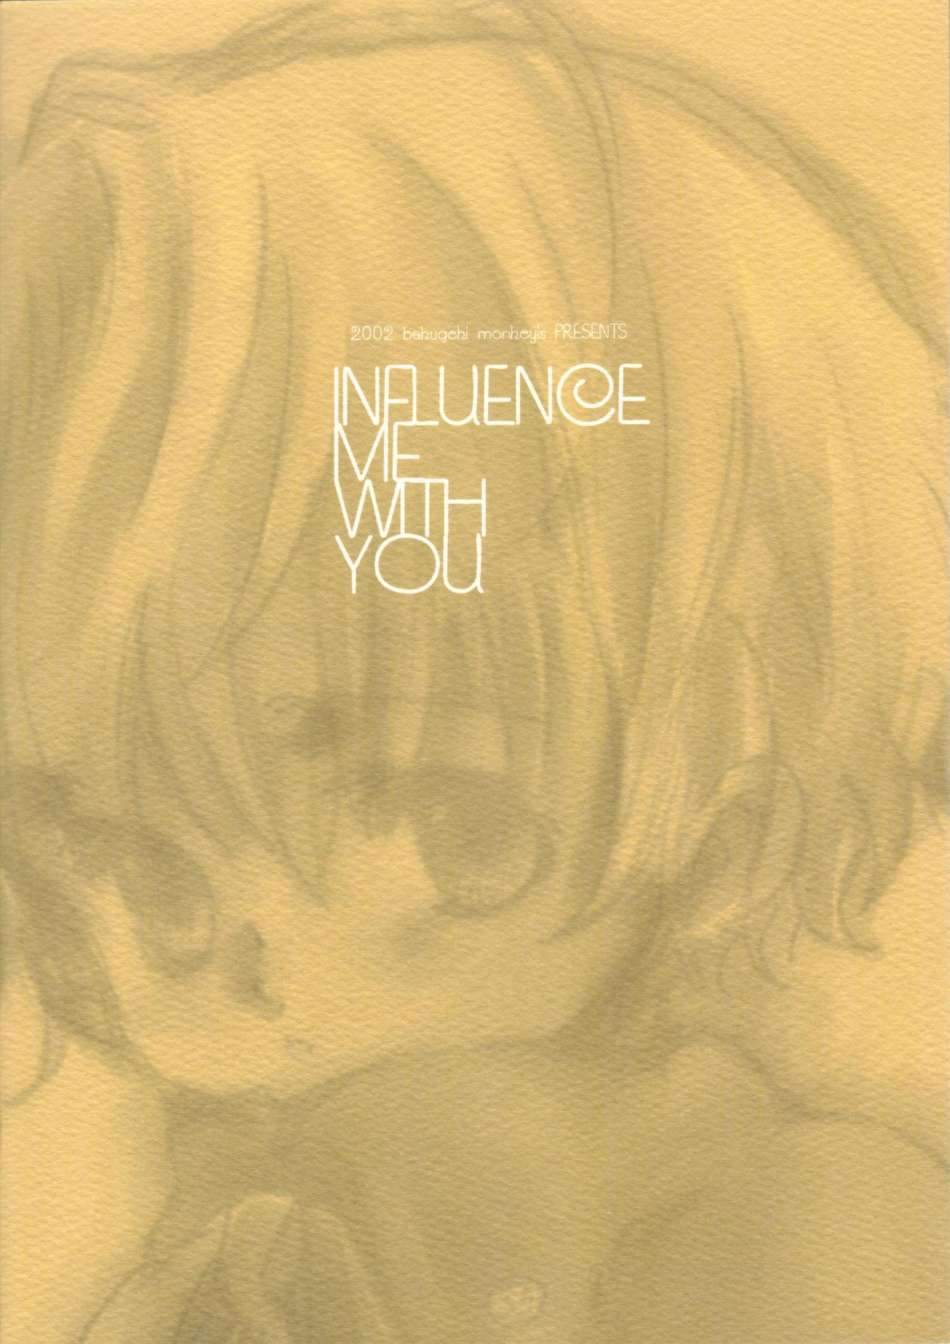 [Bakugeki Monkeys] Influence Me With You (Original) [爆撃モンキース] INFLUENCE ME WITH YOU (オリジナル)